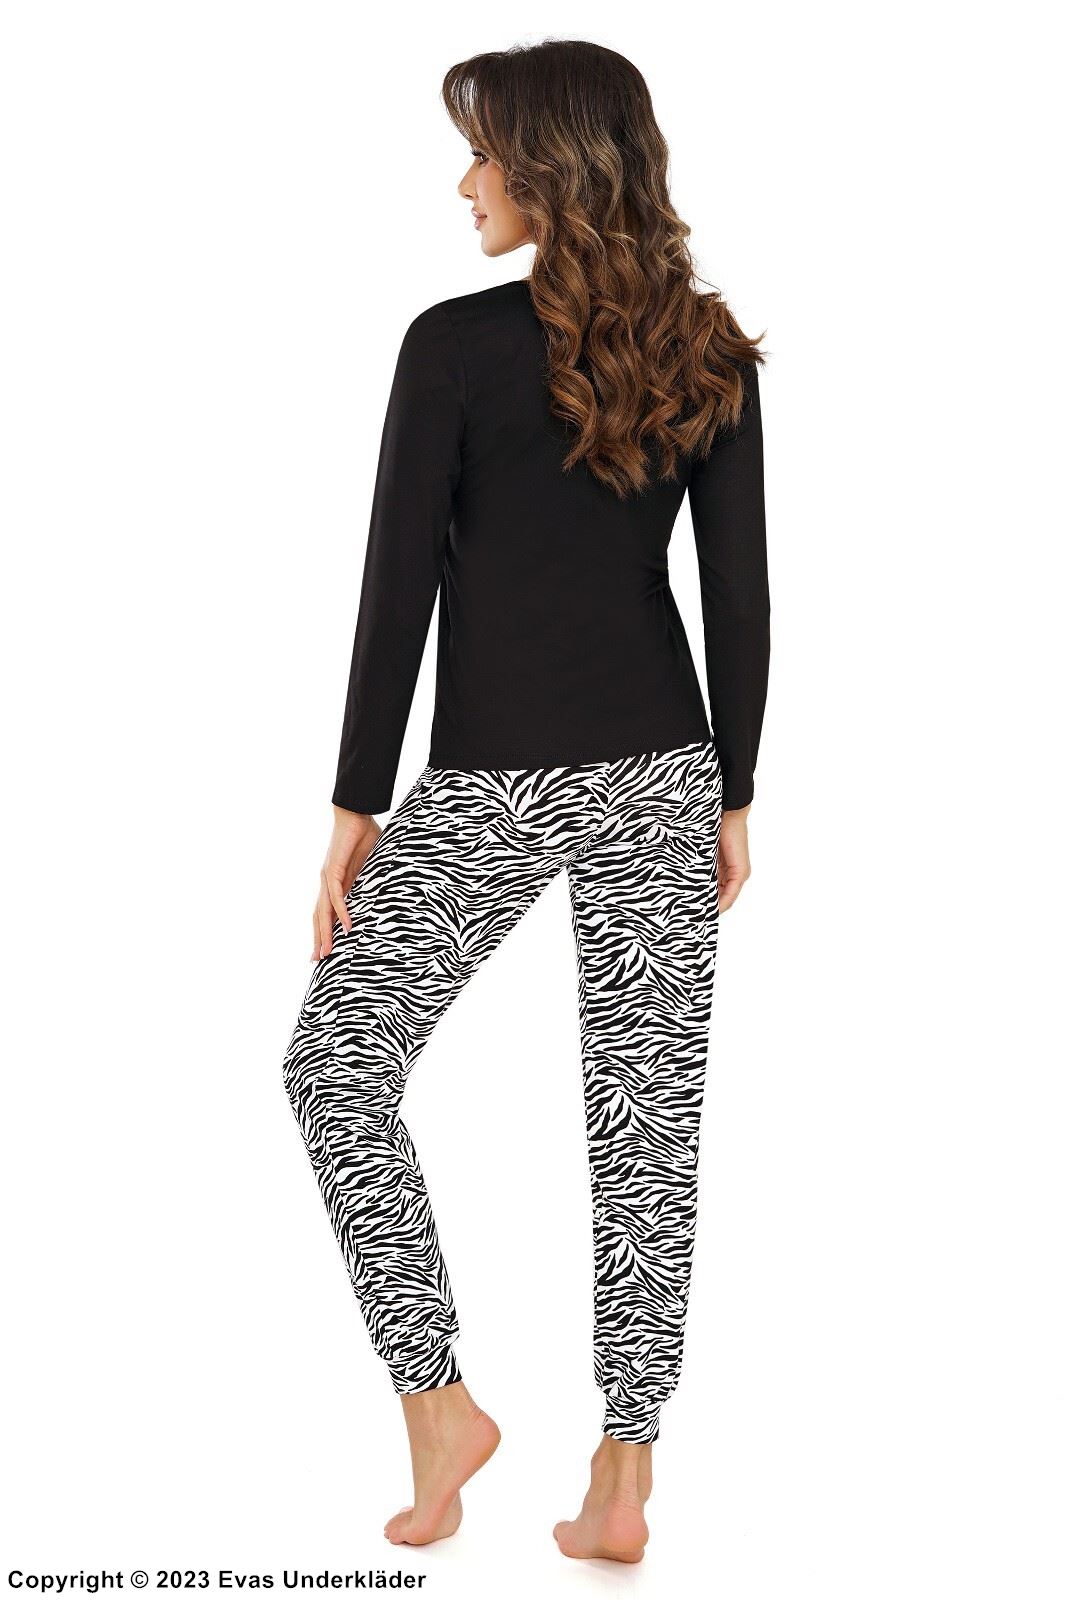 Pyjama mit Oberteil und Hose, lange Ärmel, Spitzeneinlagen, Zebra